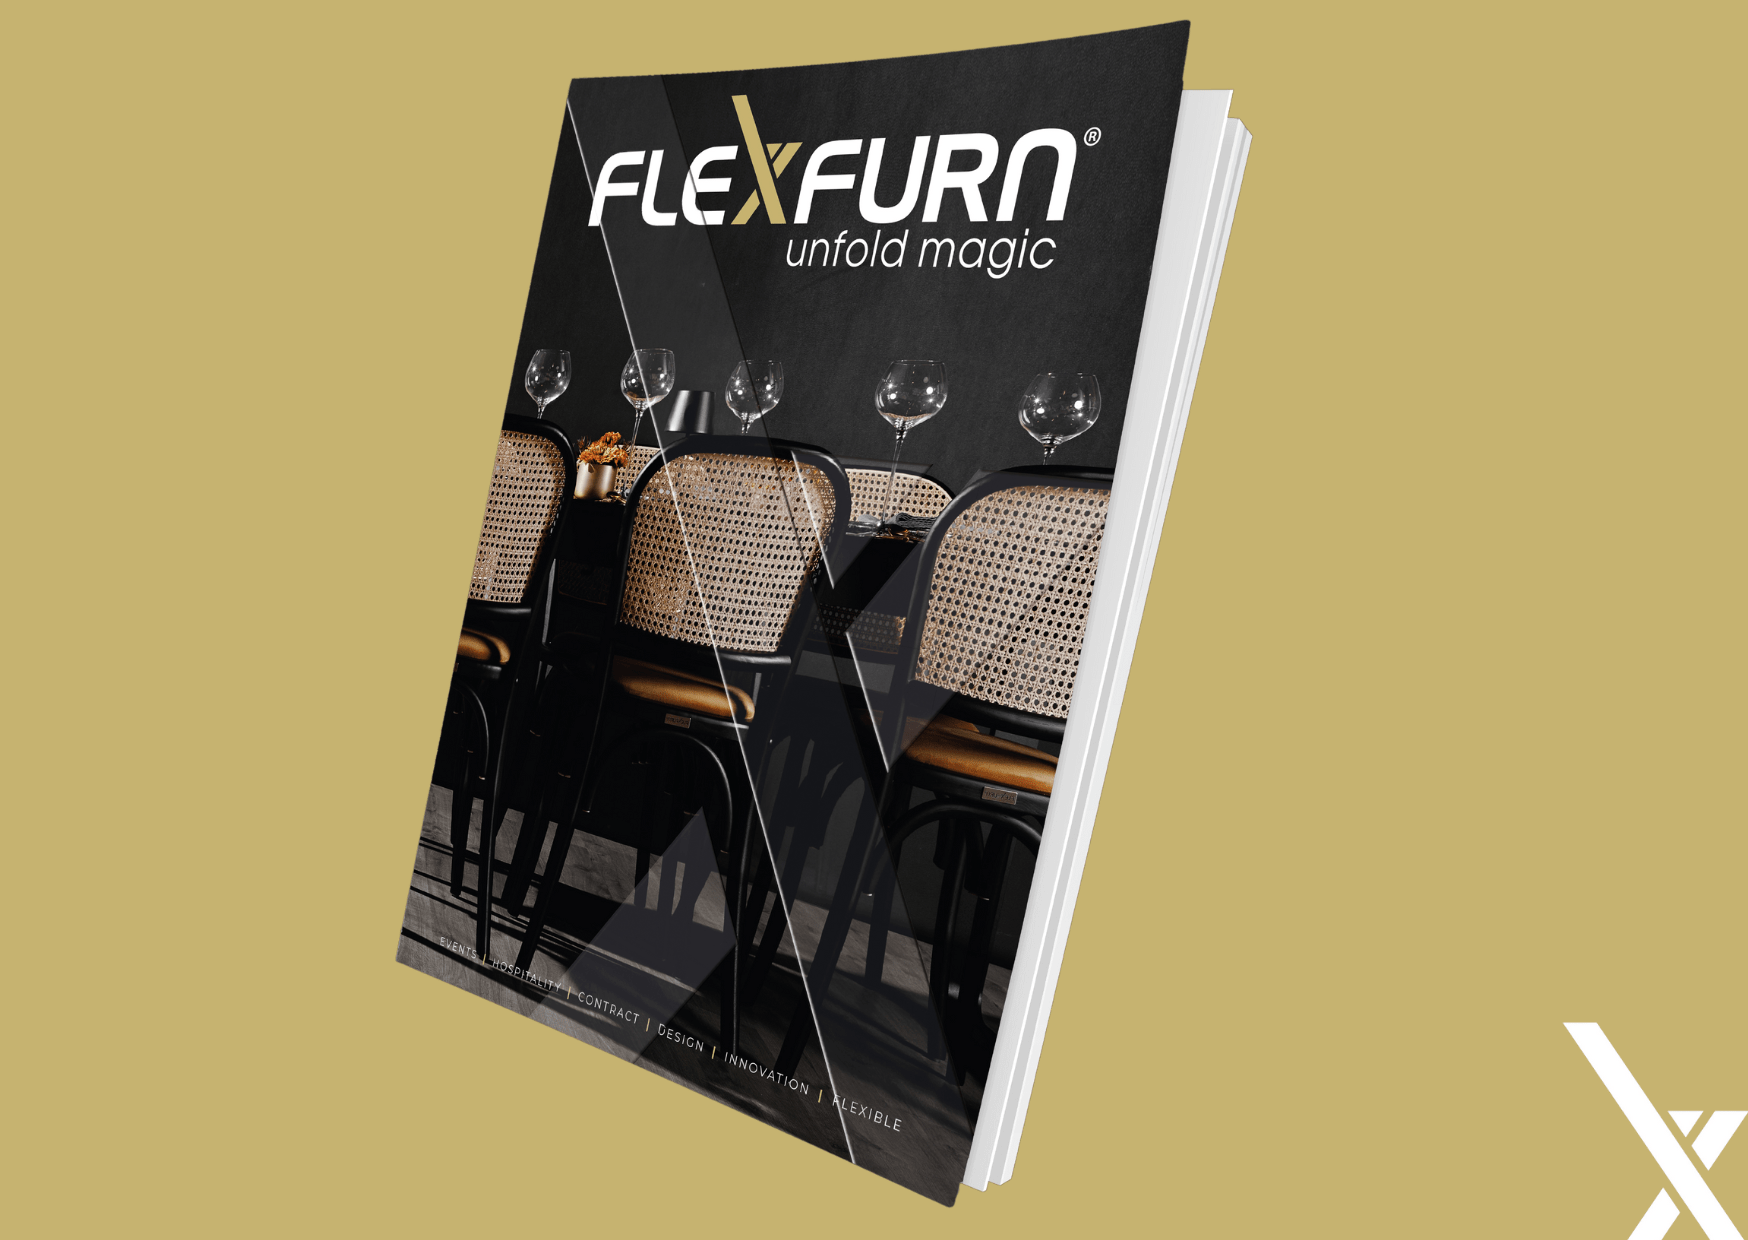 Ein Hauch frischer Luft: Entdecken Sie den neuen Stil von Flexfurn!